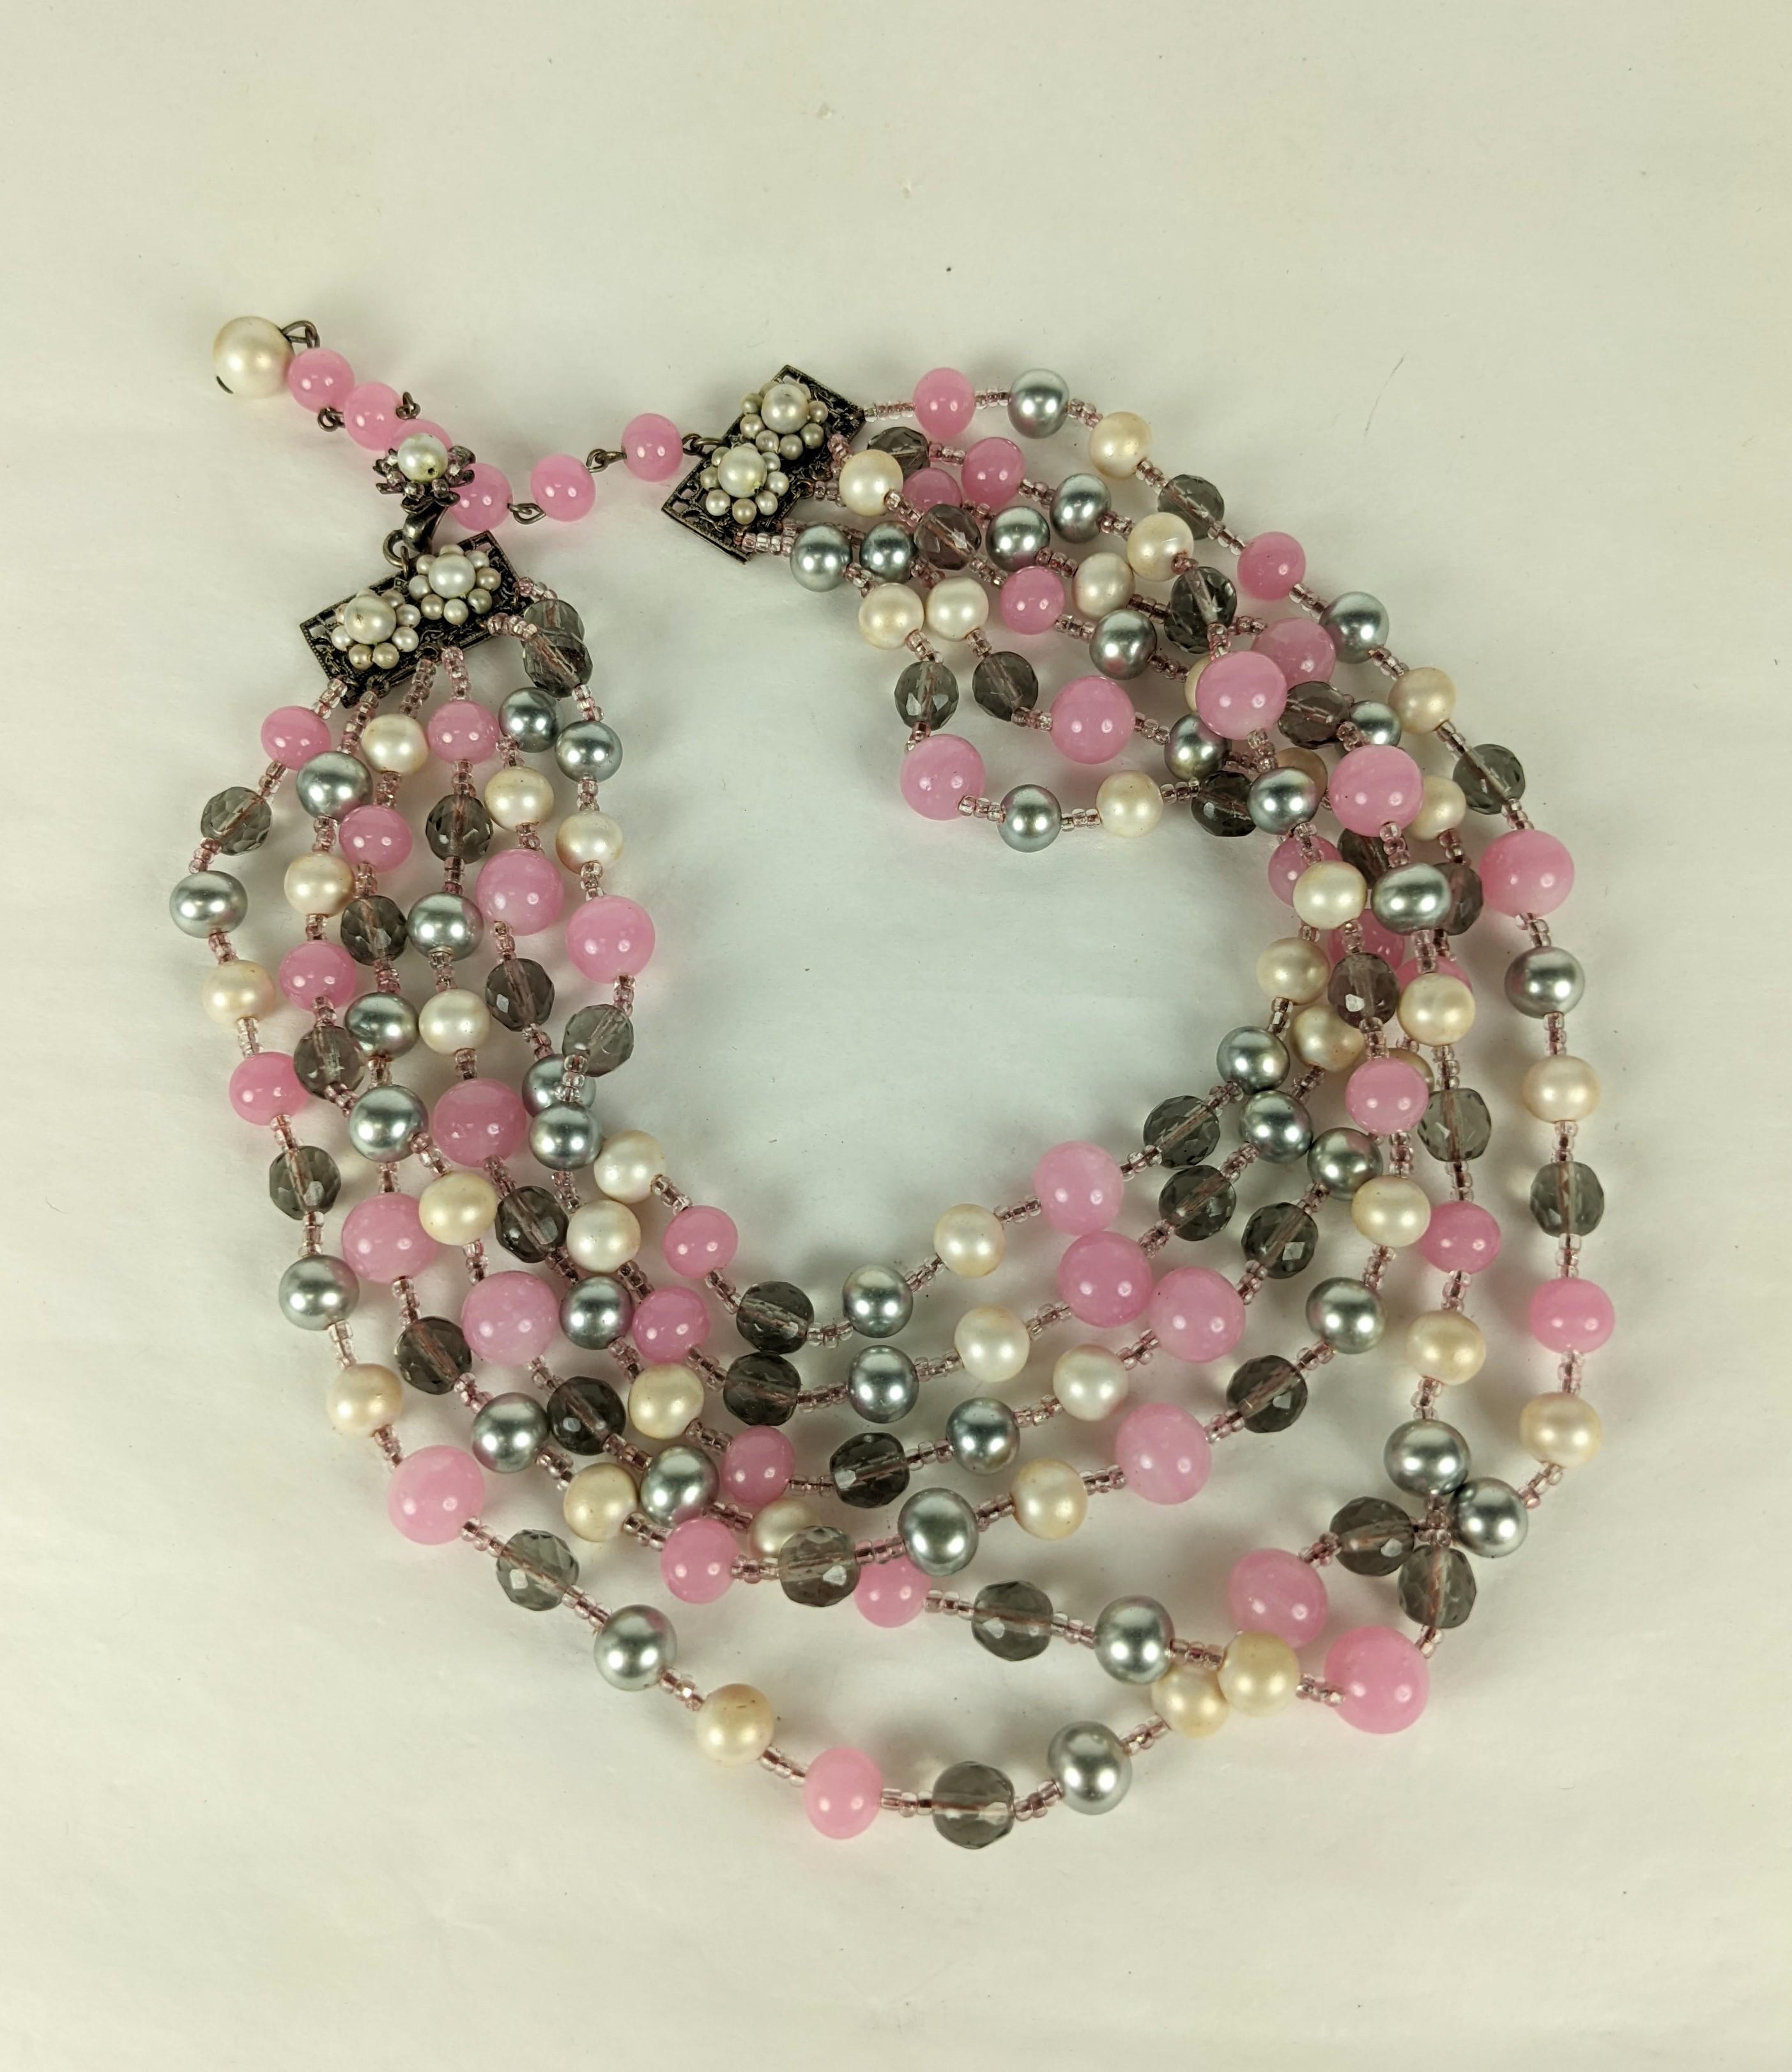 Dramatique Miriam Haskell gris, rose et perles d'eau douce en configuration graduée à 6 brins. Composé de fausses perles d'eau douce grises et blanches avec des perles en pate de verre rose et des cristaux facettés fumés, le tout séparé par de